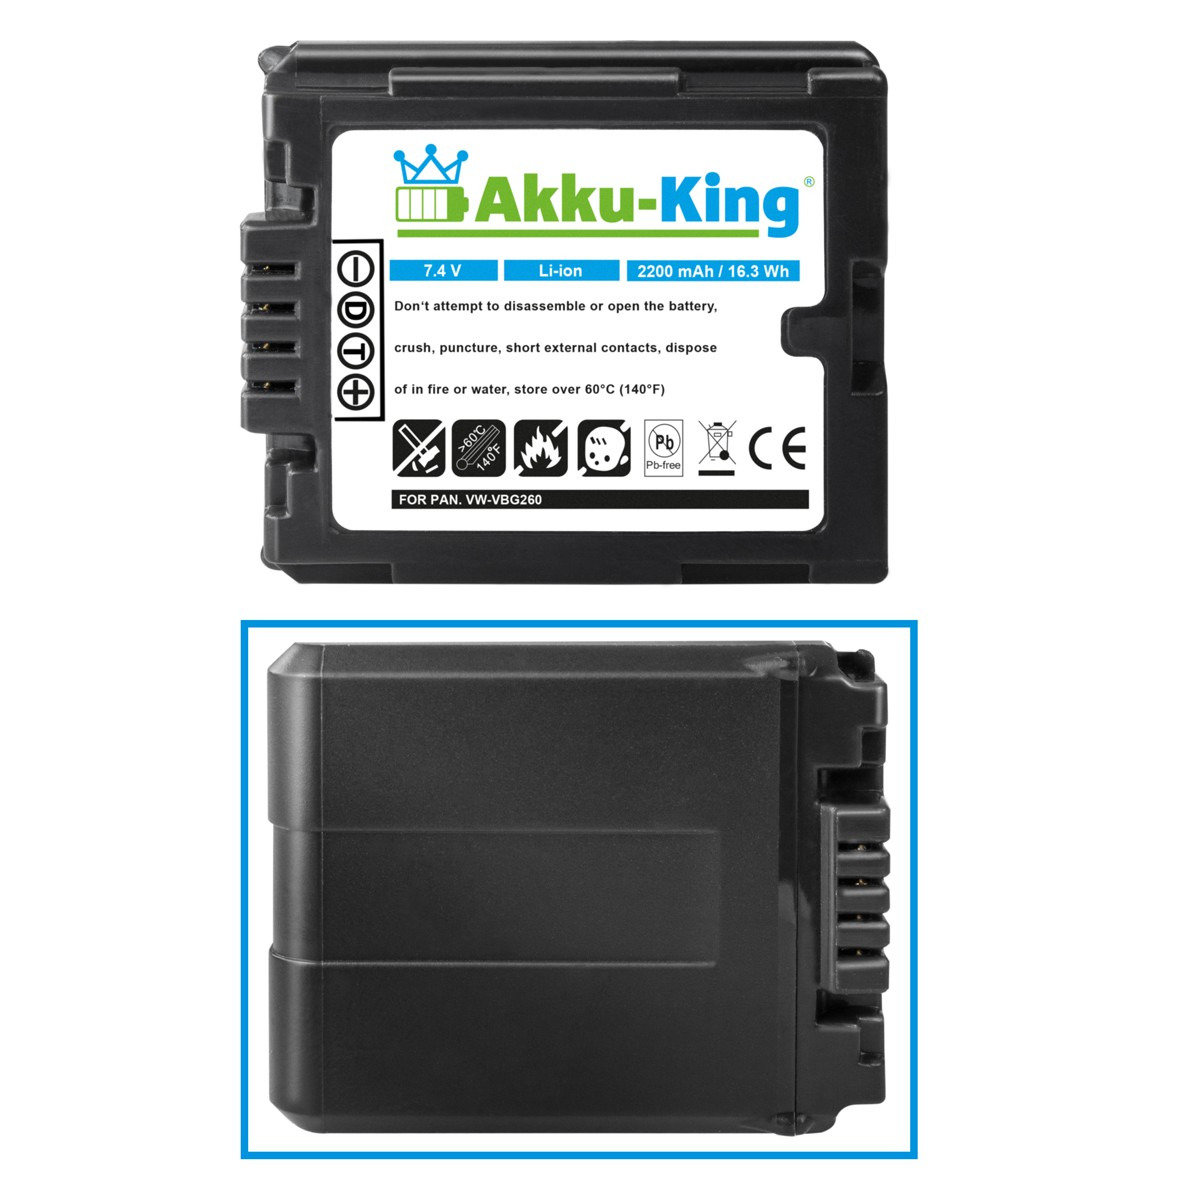 AKKU-KING Akku kompatibel mit Panasonic 2200mAh Li-Ion VW-VBG260 Volt, Kamera-Akku, 7.4